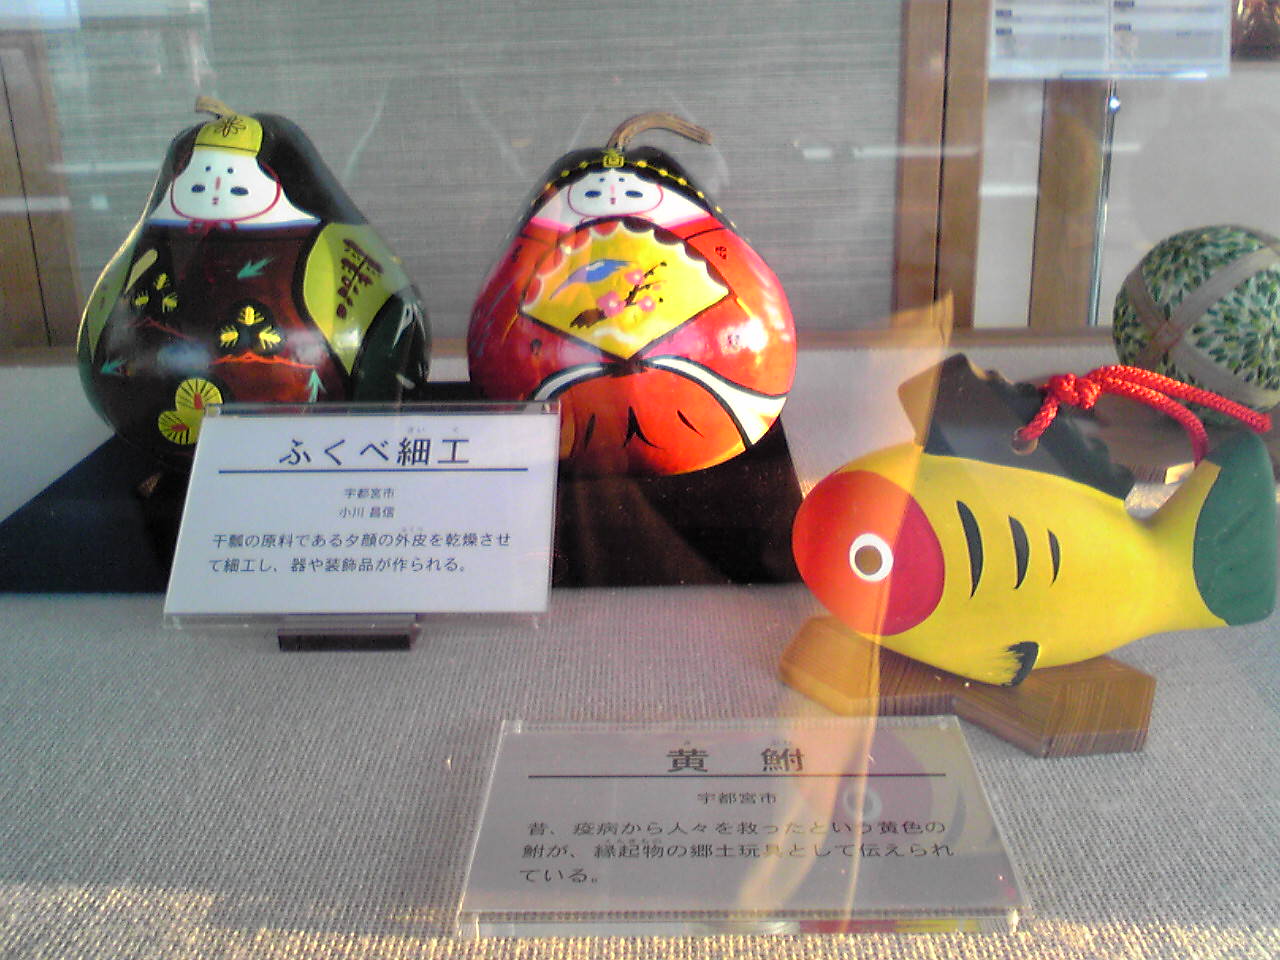 栃木県庁15階展望ロビー・とちぎの伝統工芸常設展